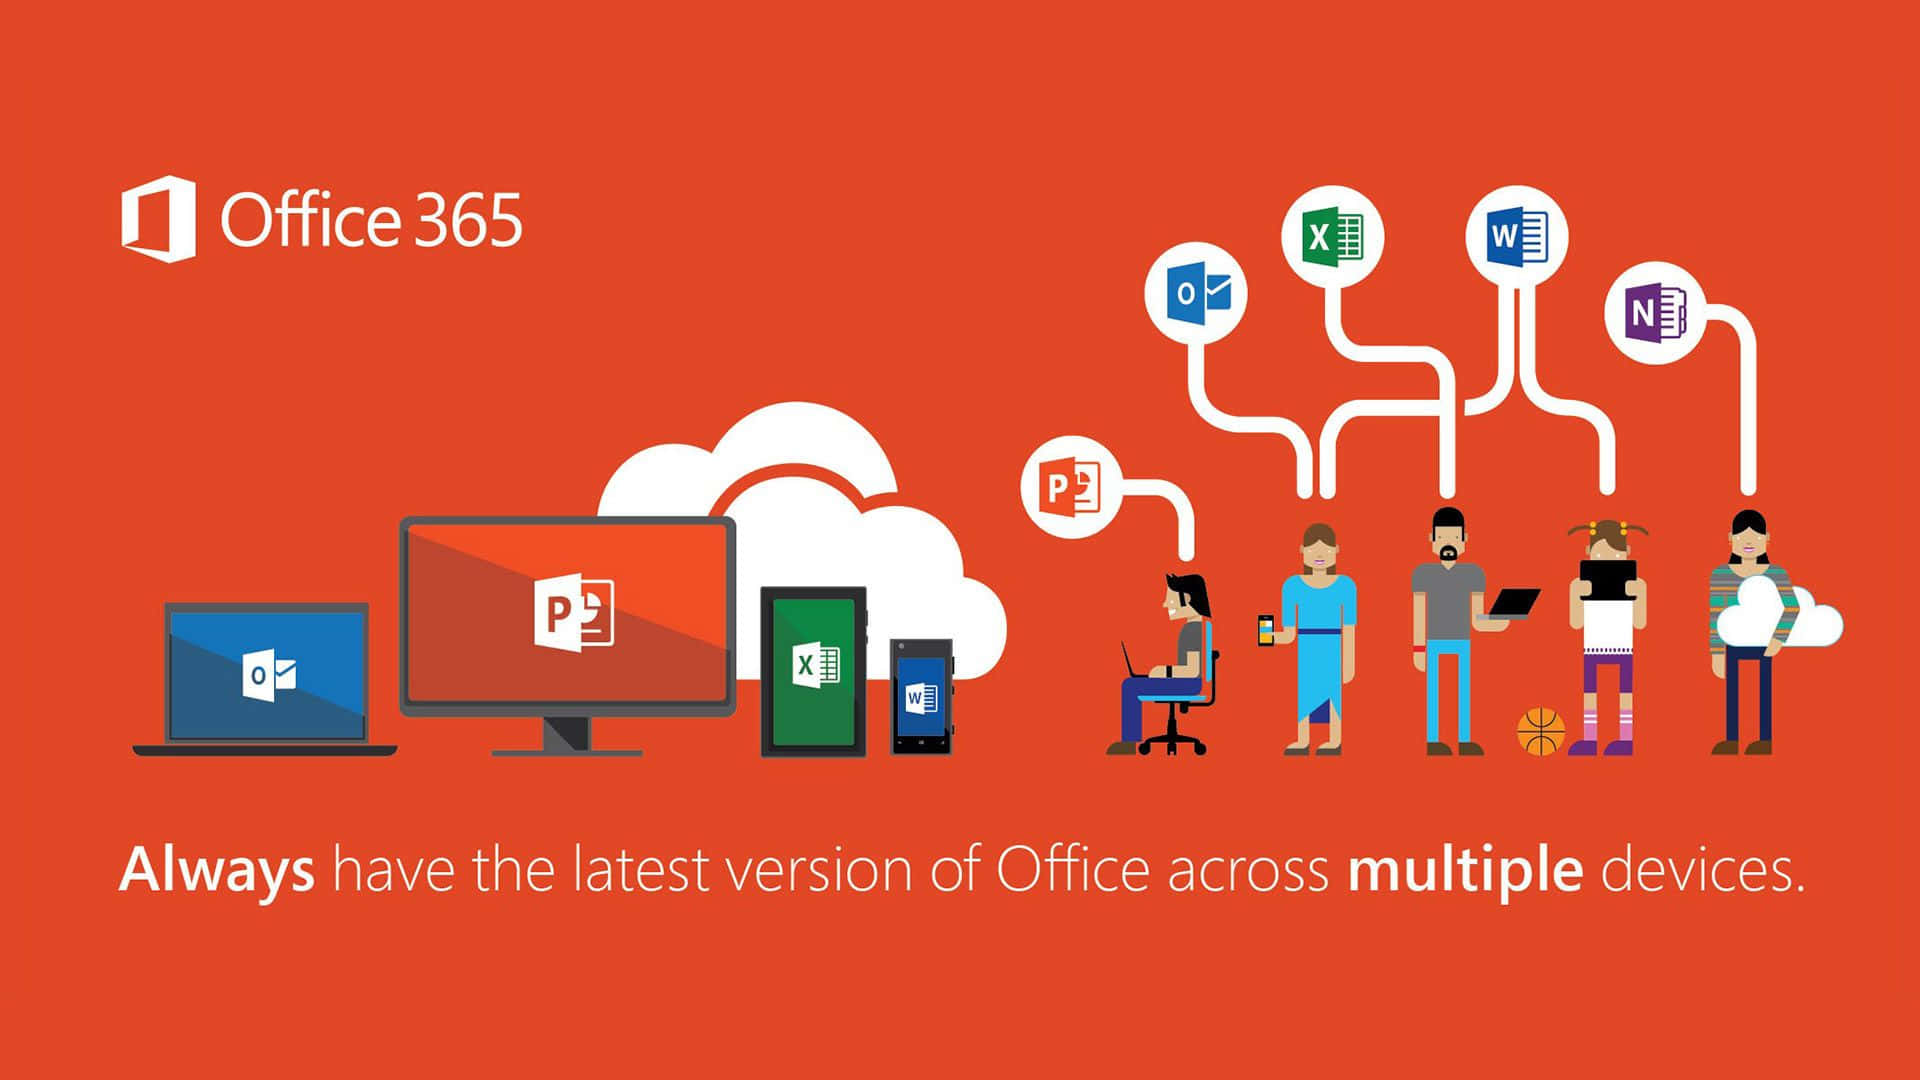 Øgproduktiviteten Med Office 365.